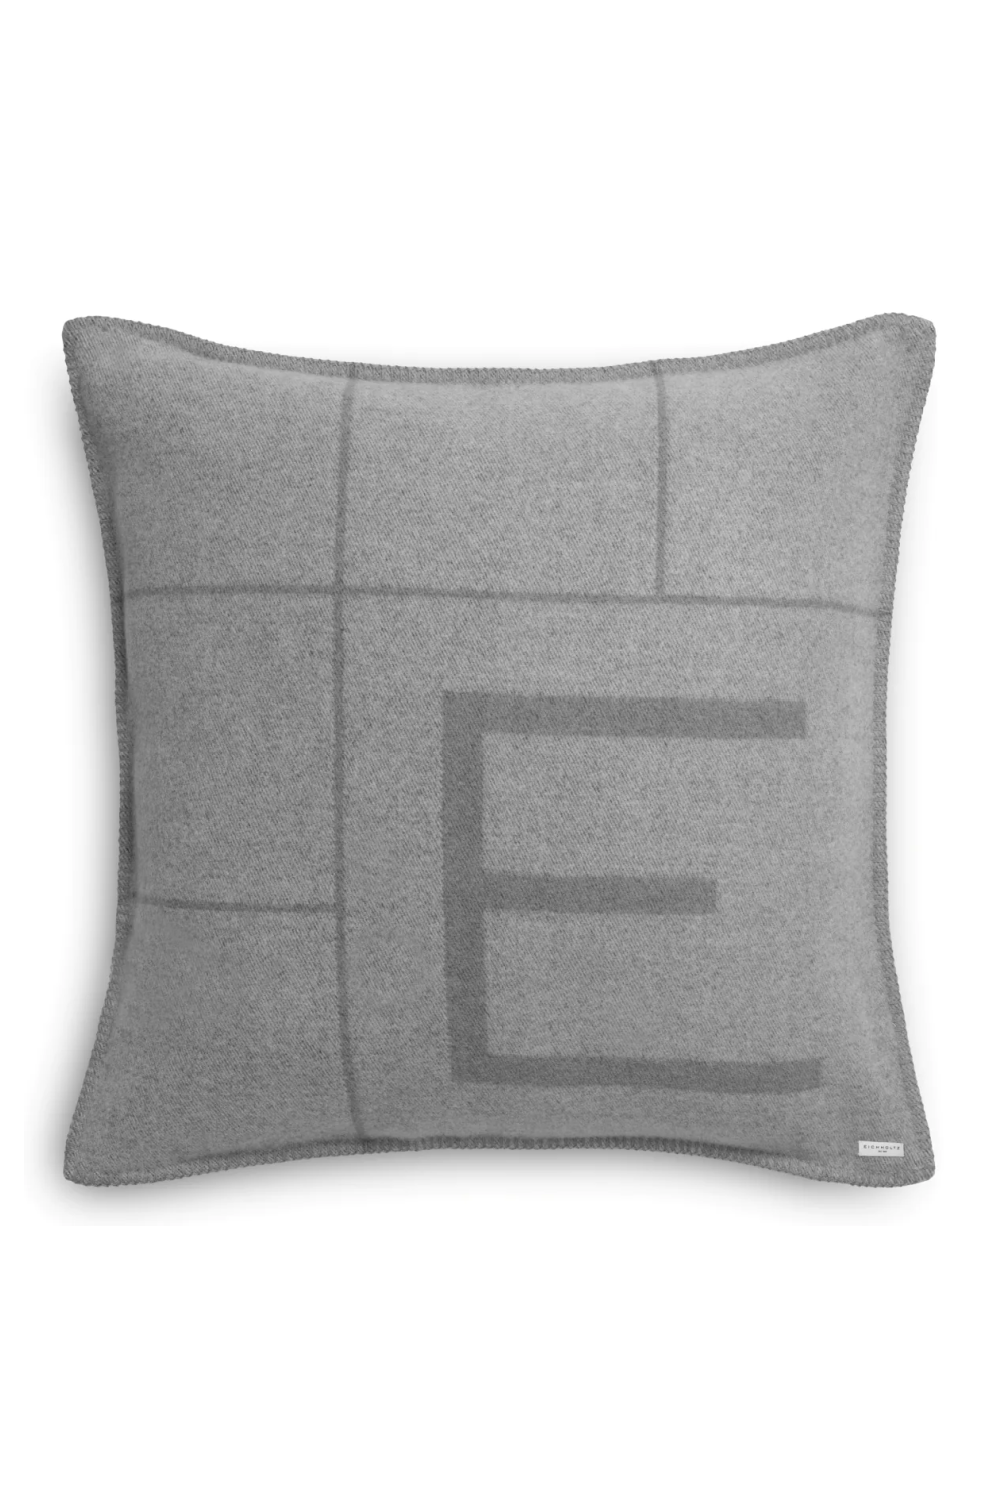 Hemstitch Wool Cushion L | Eichholtz Rhoda | Oroa.com